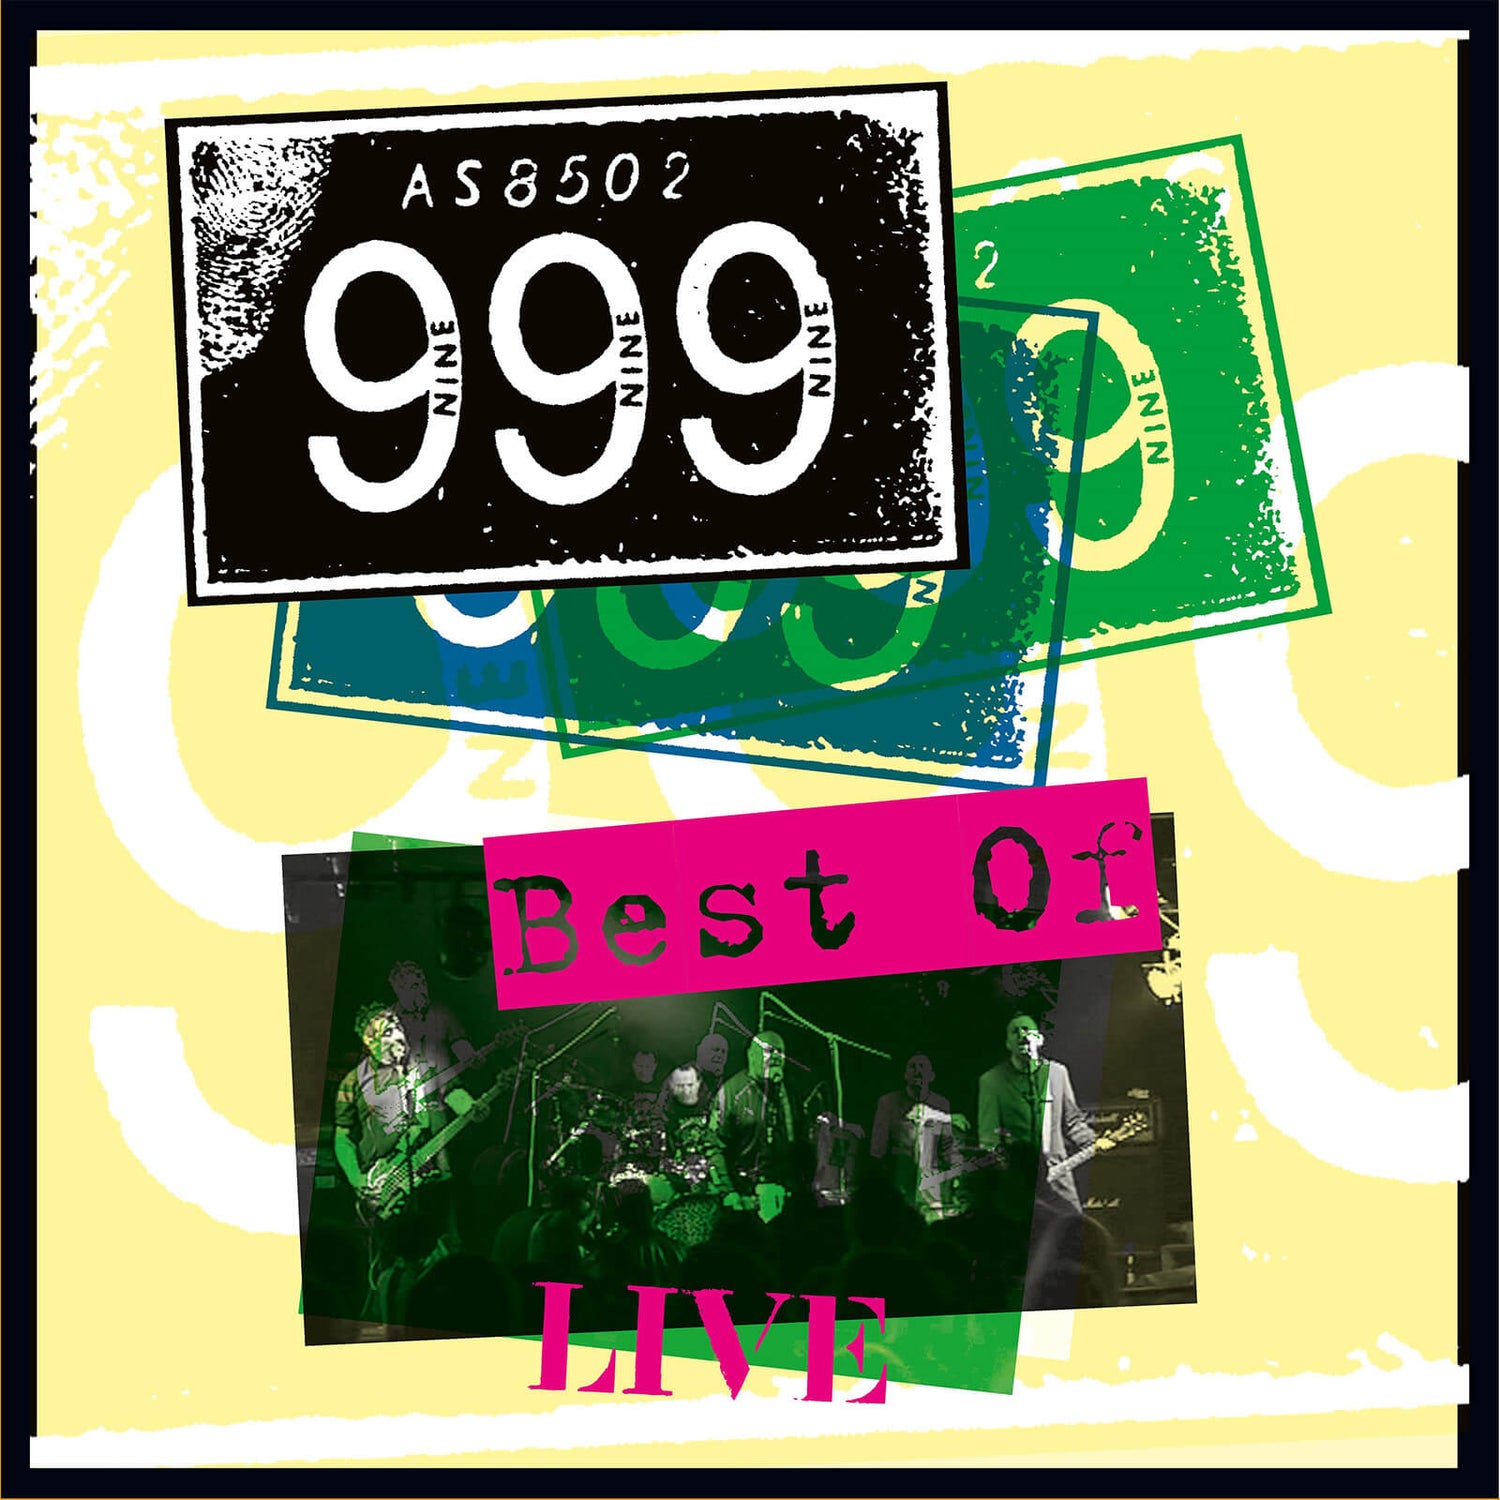 999 - Best Of Live Vinyl